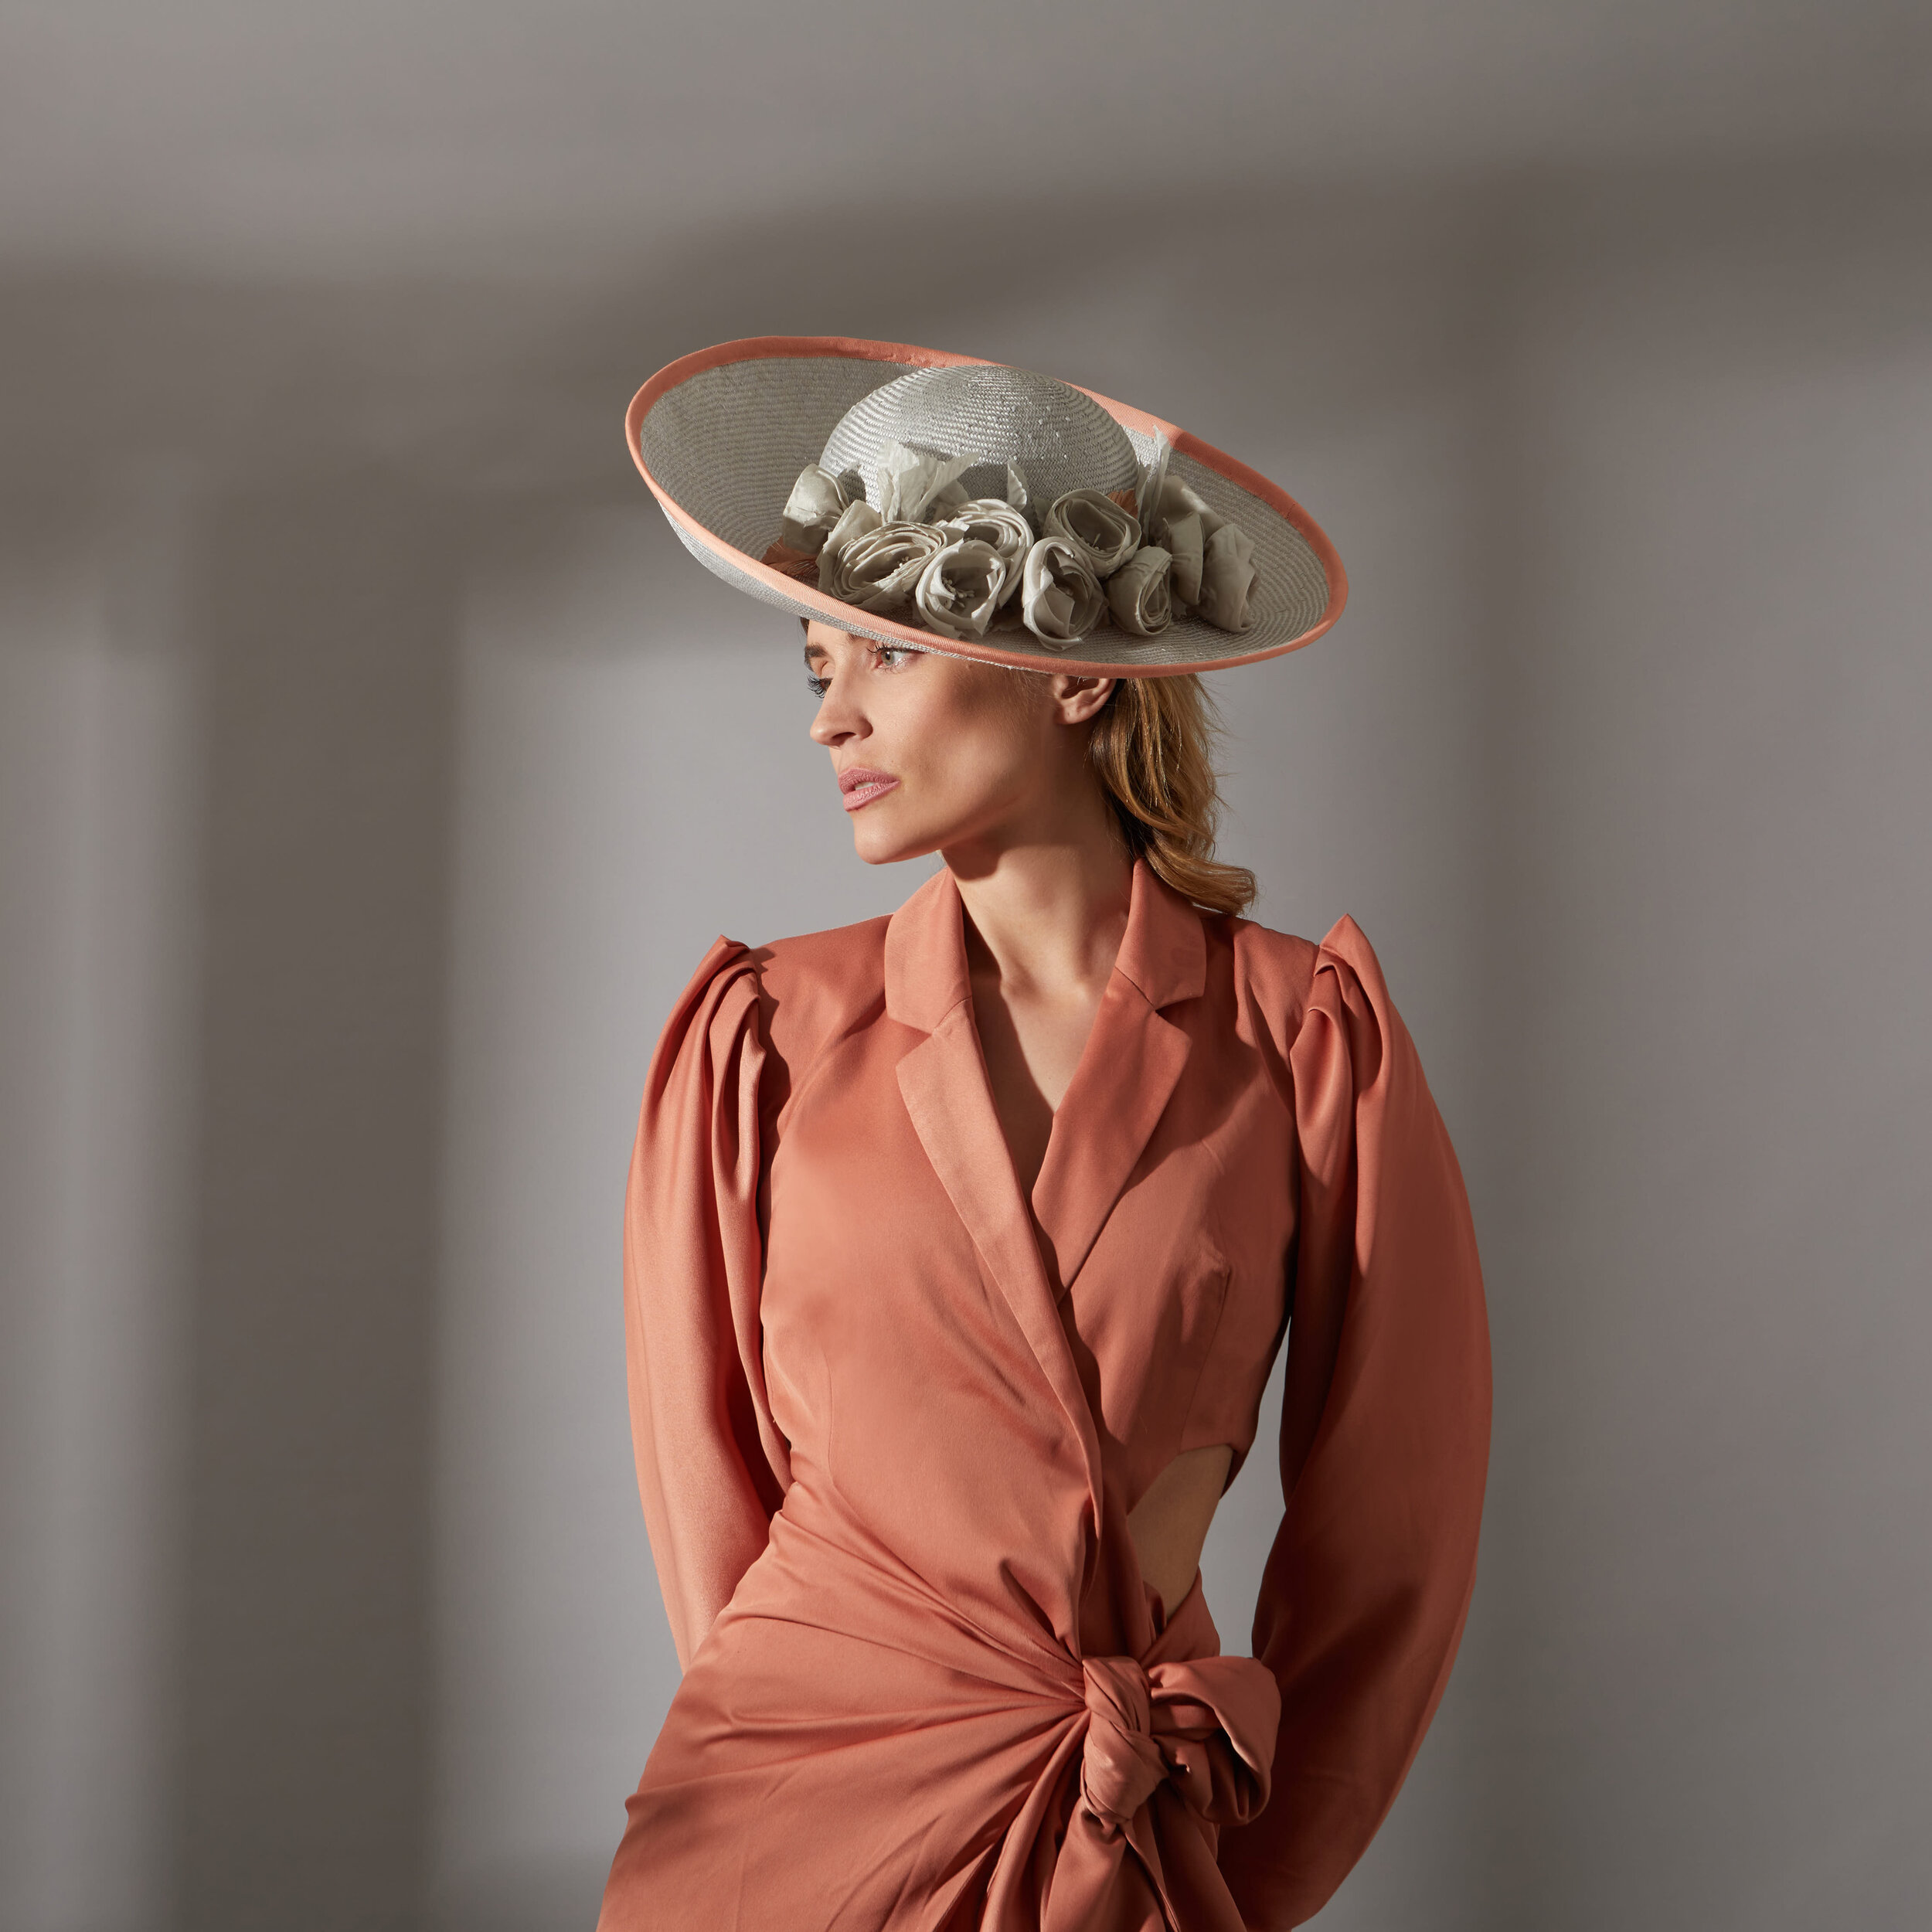 Sophia-Peach and grey big brimmed hat-By Judy Bentinck-4.jpg